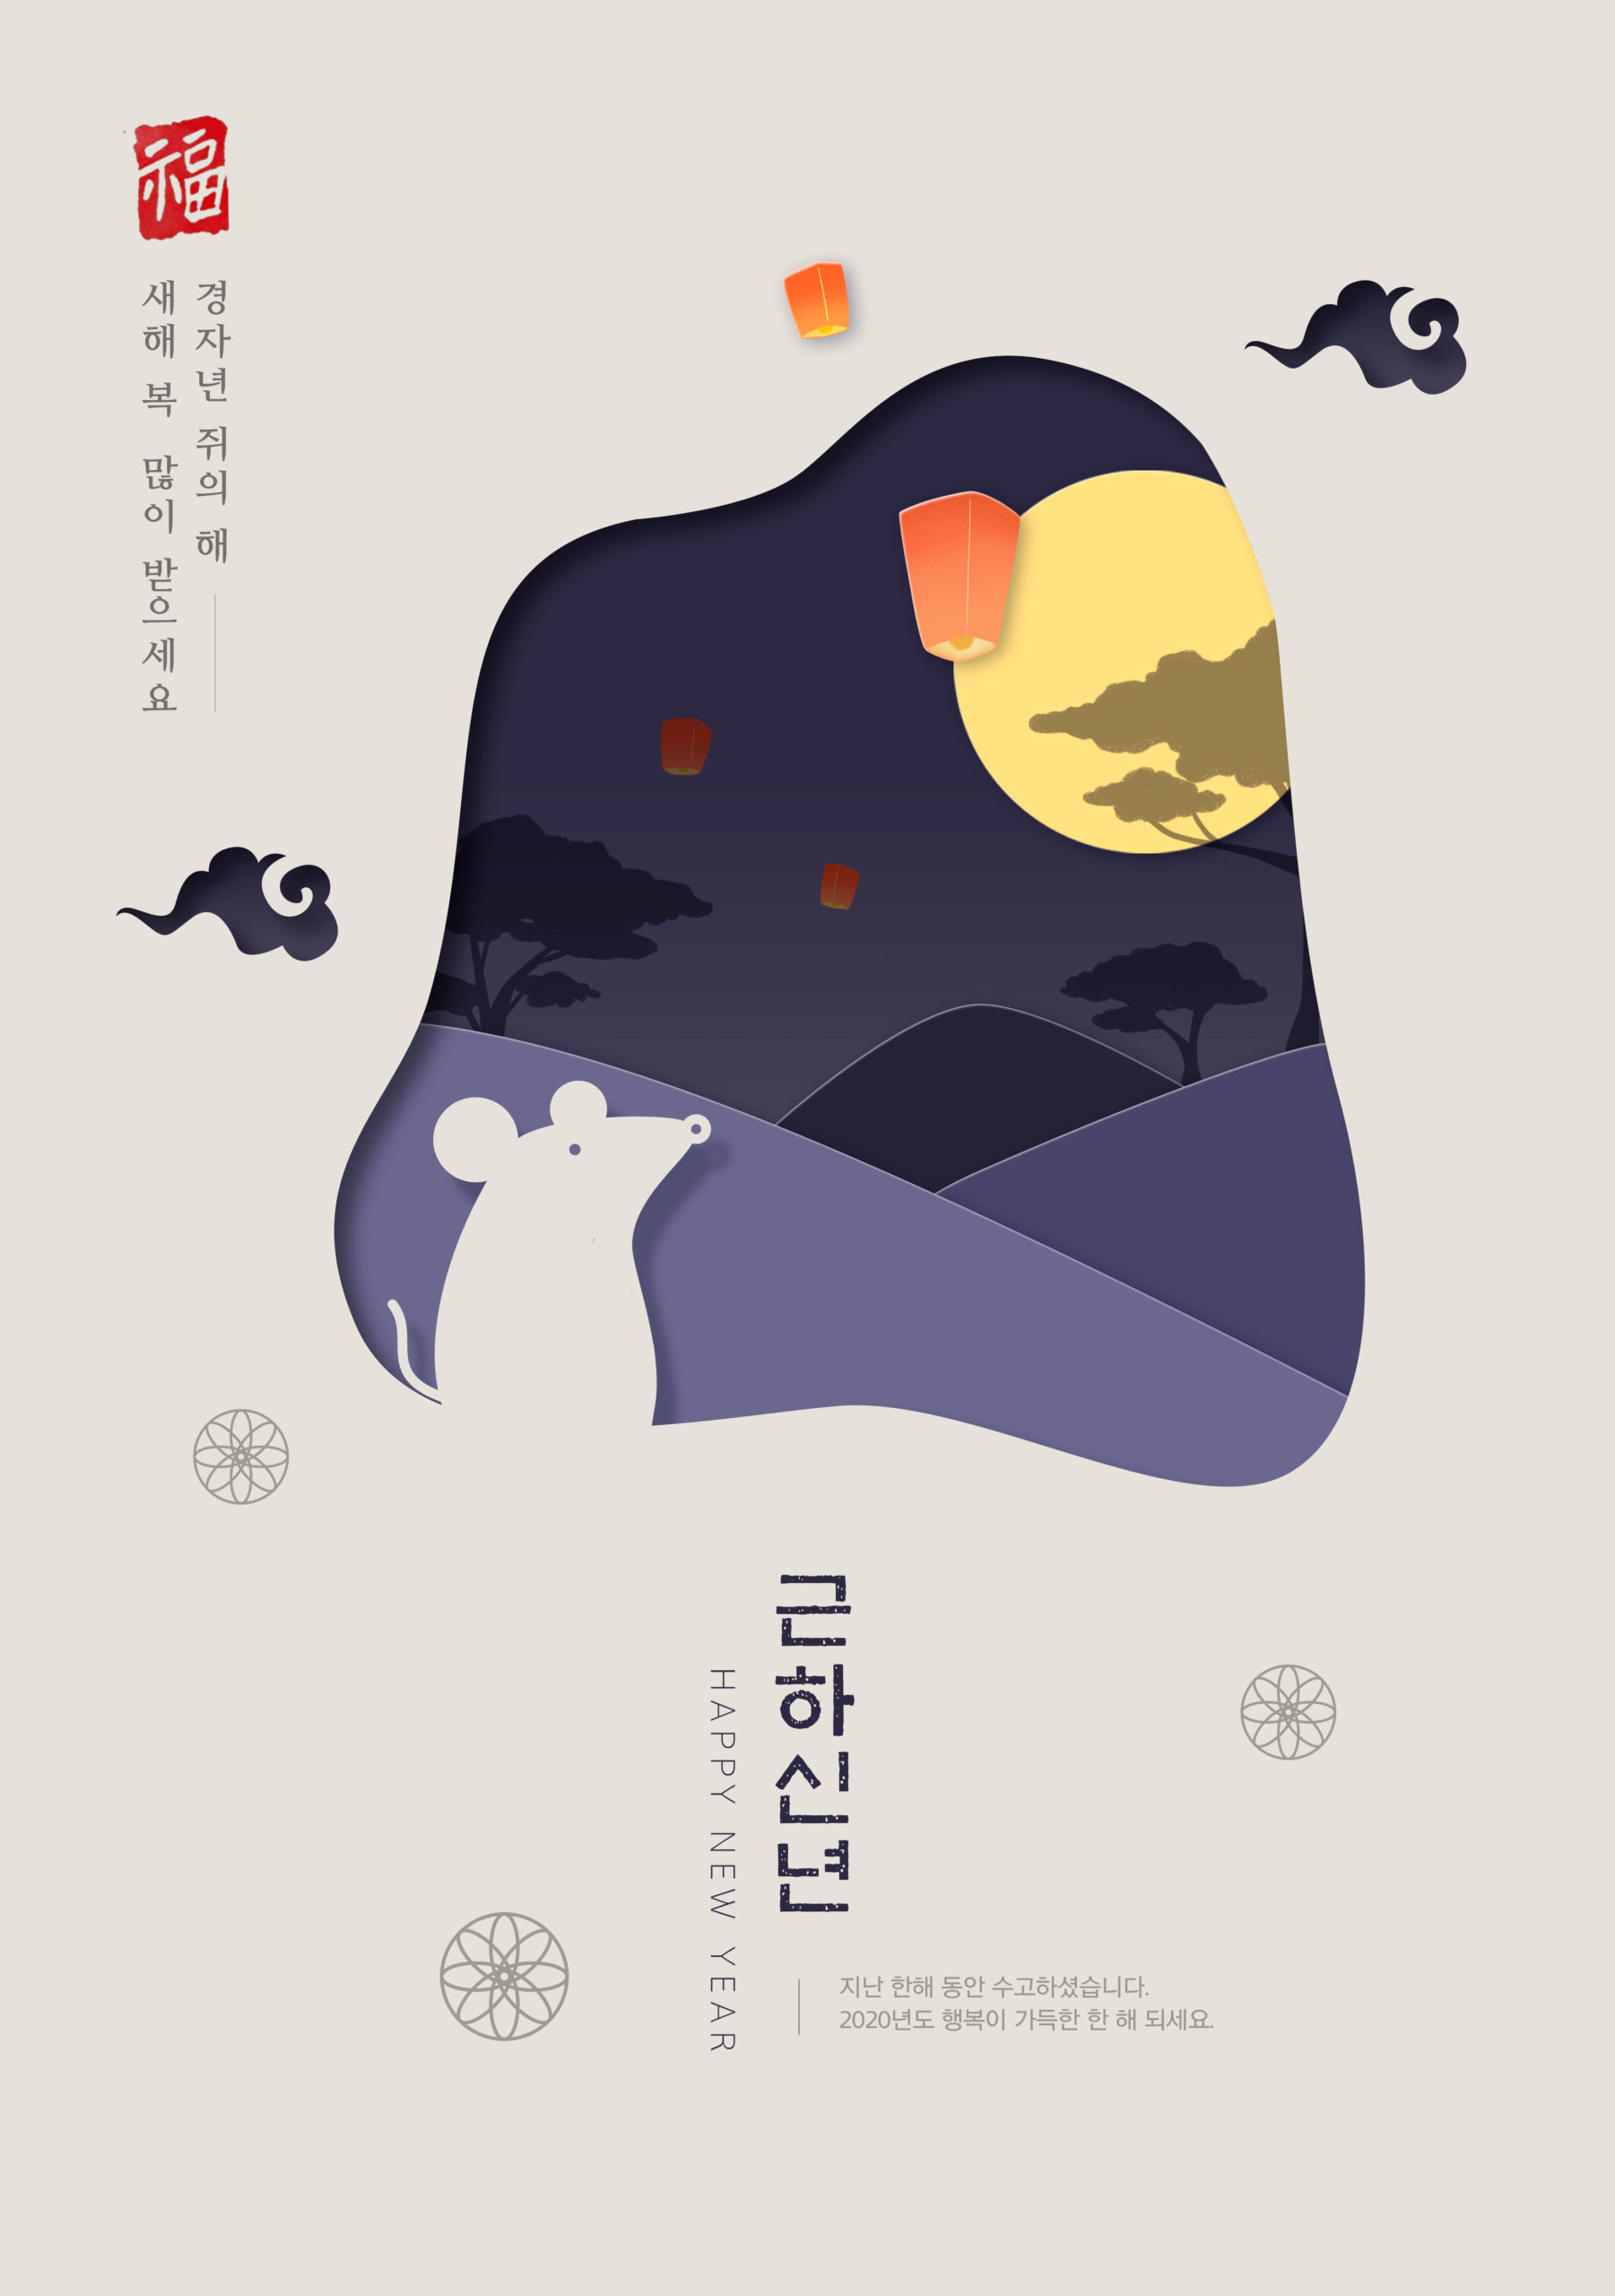 鼠年新春主题韩国海报PSD素材非凡图库精选模板插图